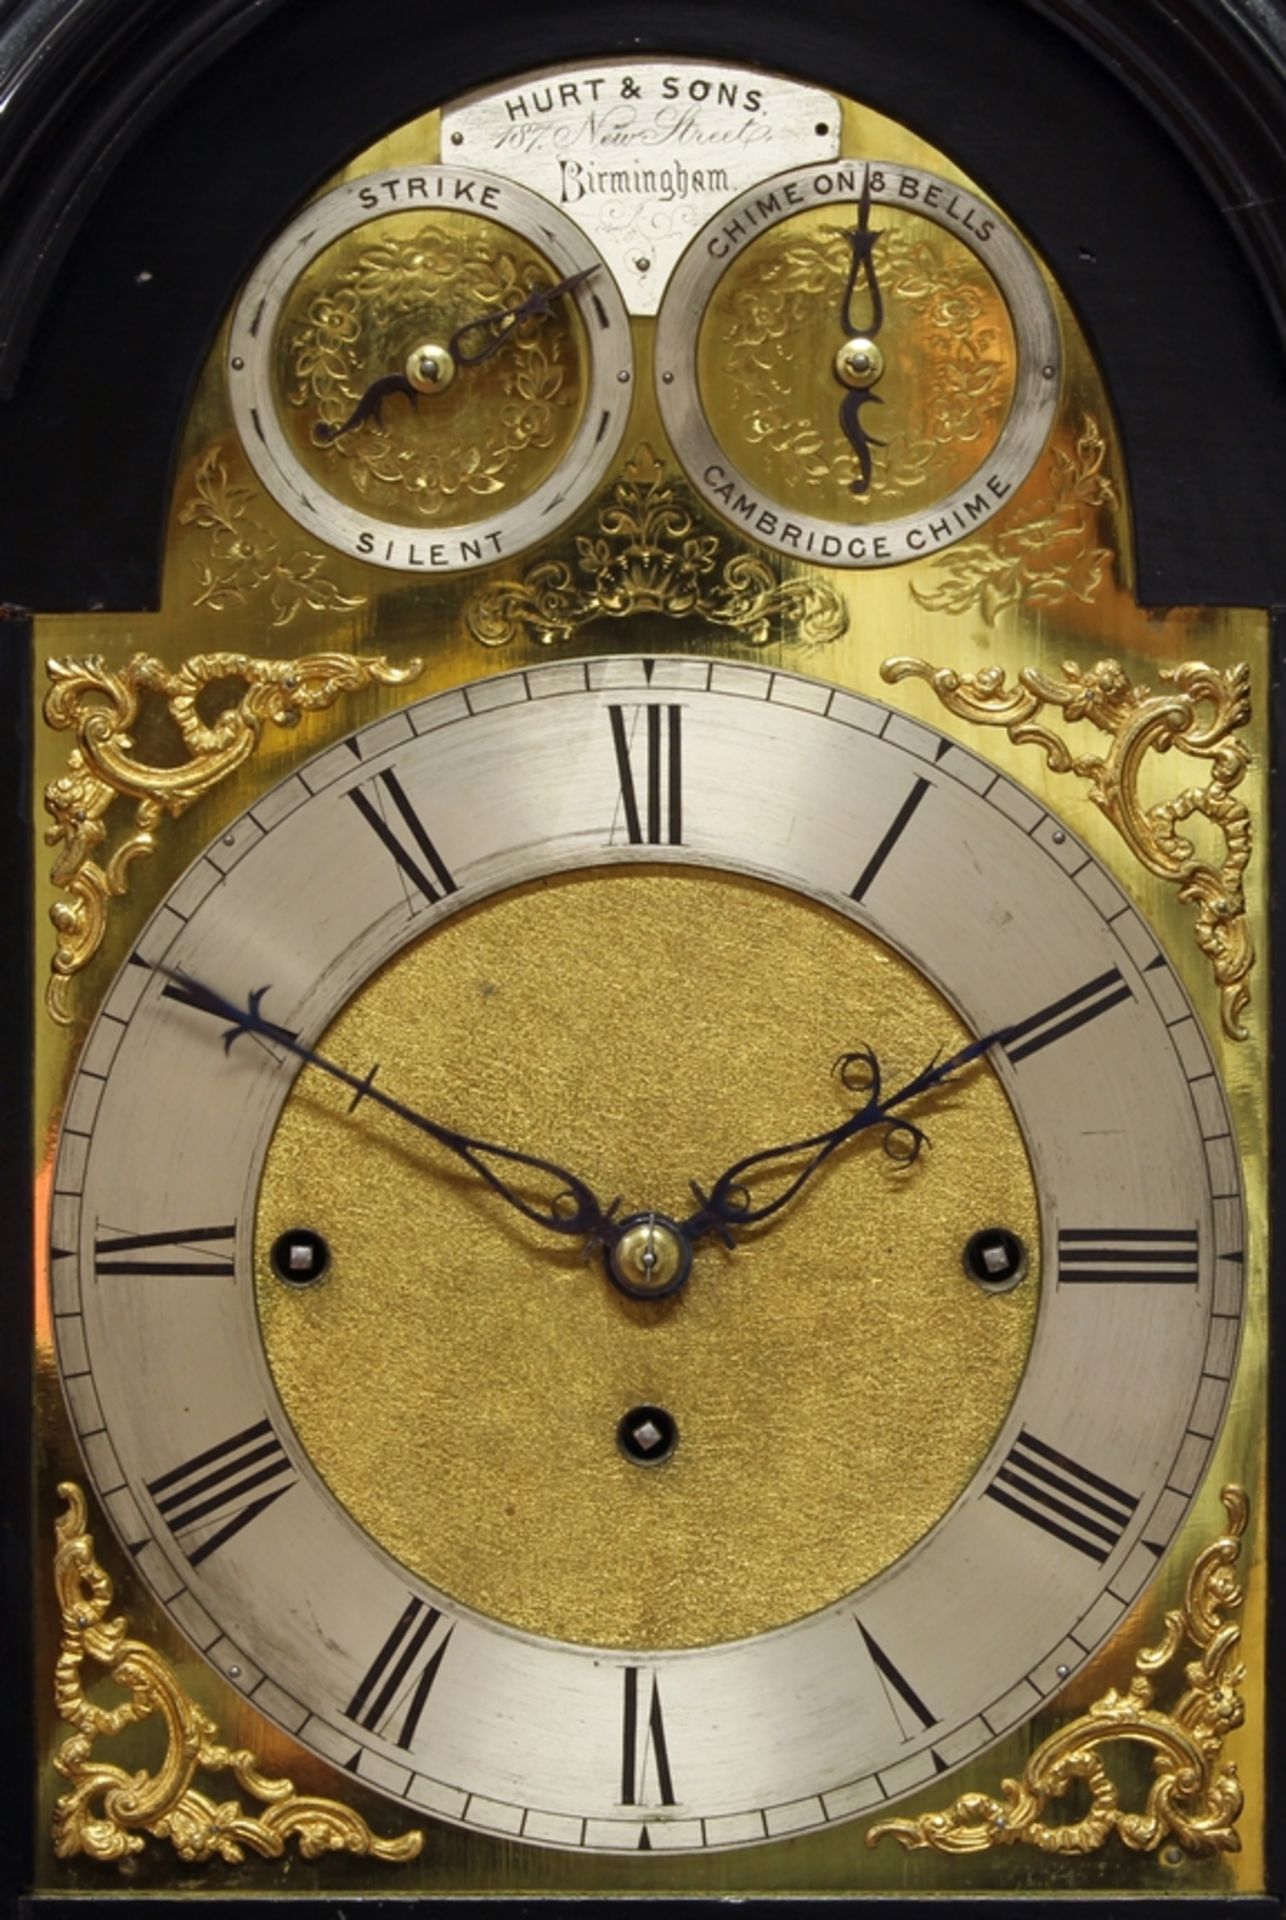 Bracket Clock, England, Mitte 19. Jh., signiert Hurt & Sons, 187 New Street, Birmingham, schwarzes  - Bild 2 aus 6